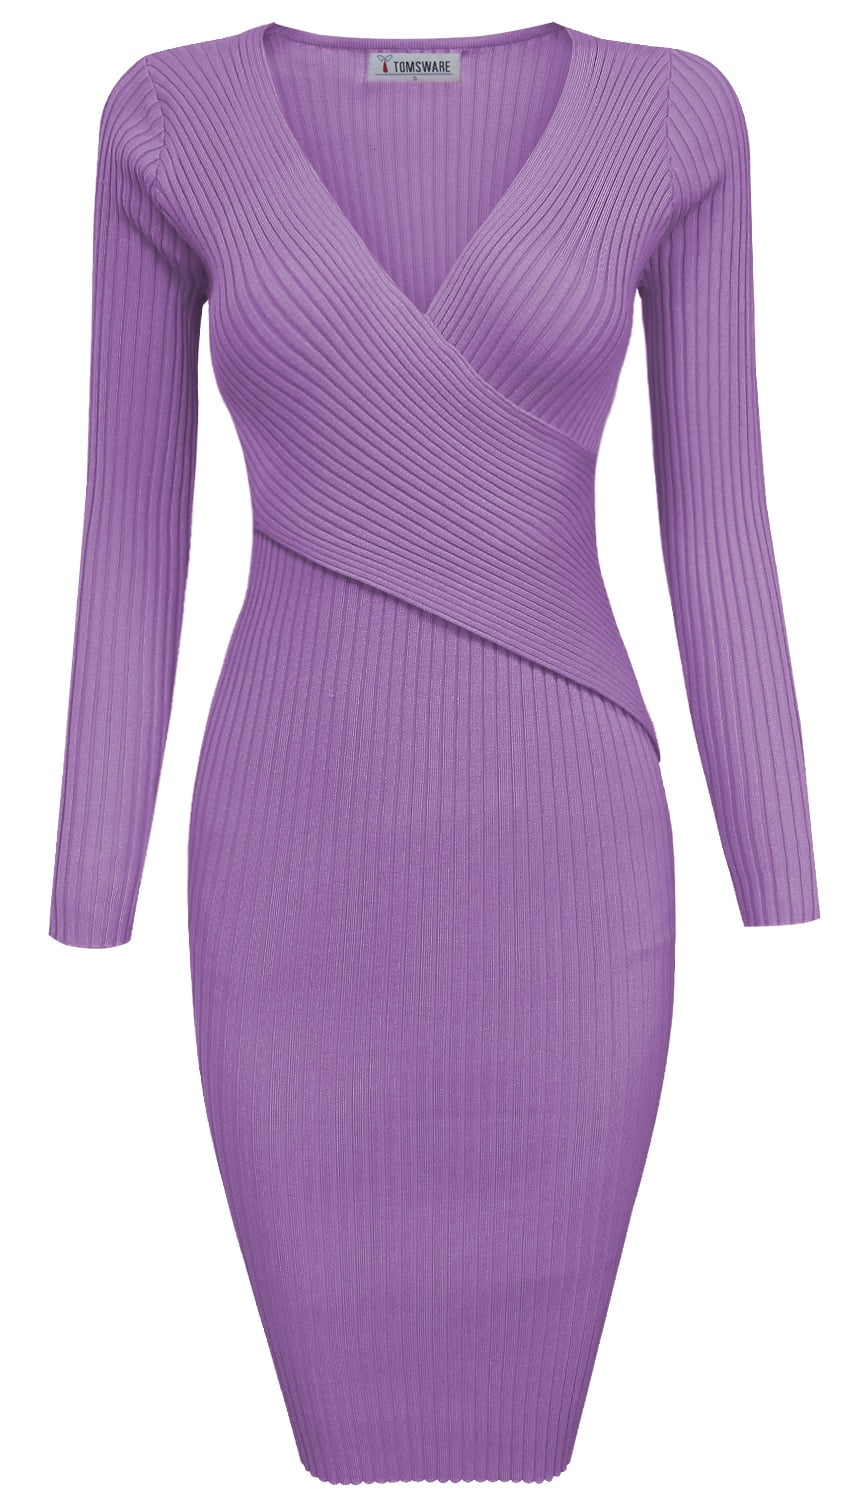 TAM WARE Womens Stylish Surplice Wrap Bodycon Knit Midi Dress TWCWD157 ...